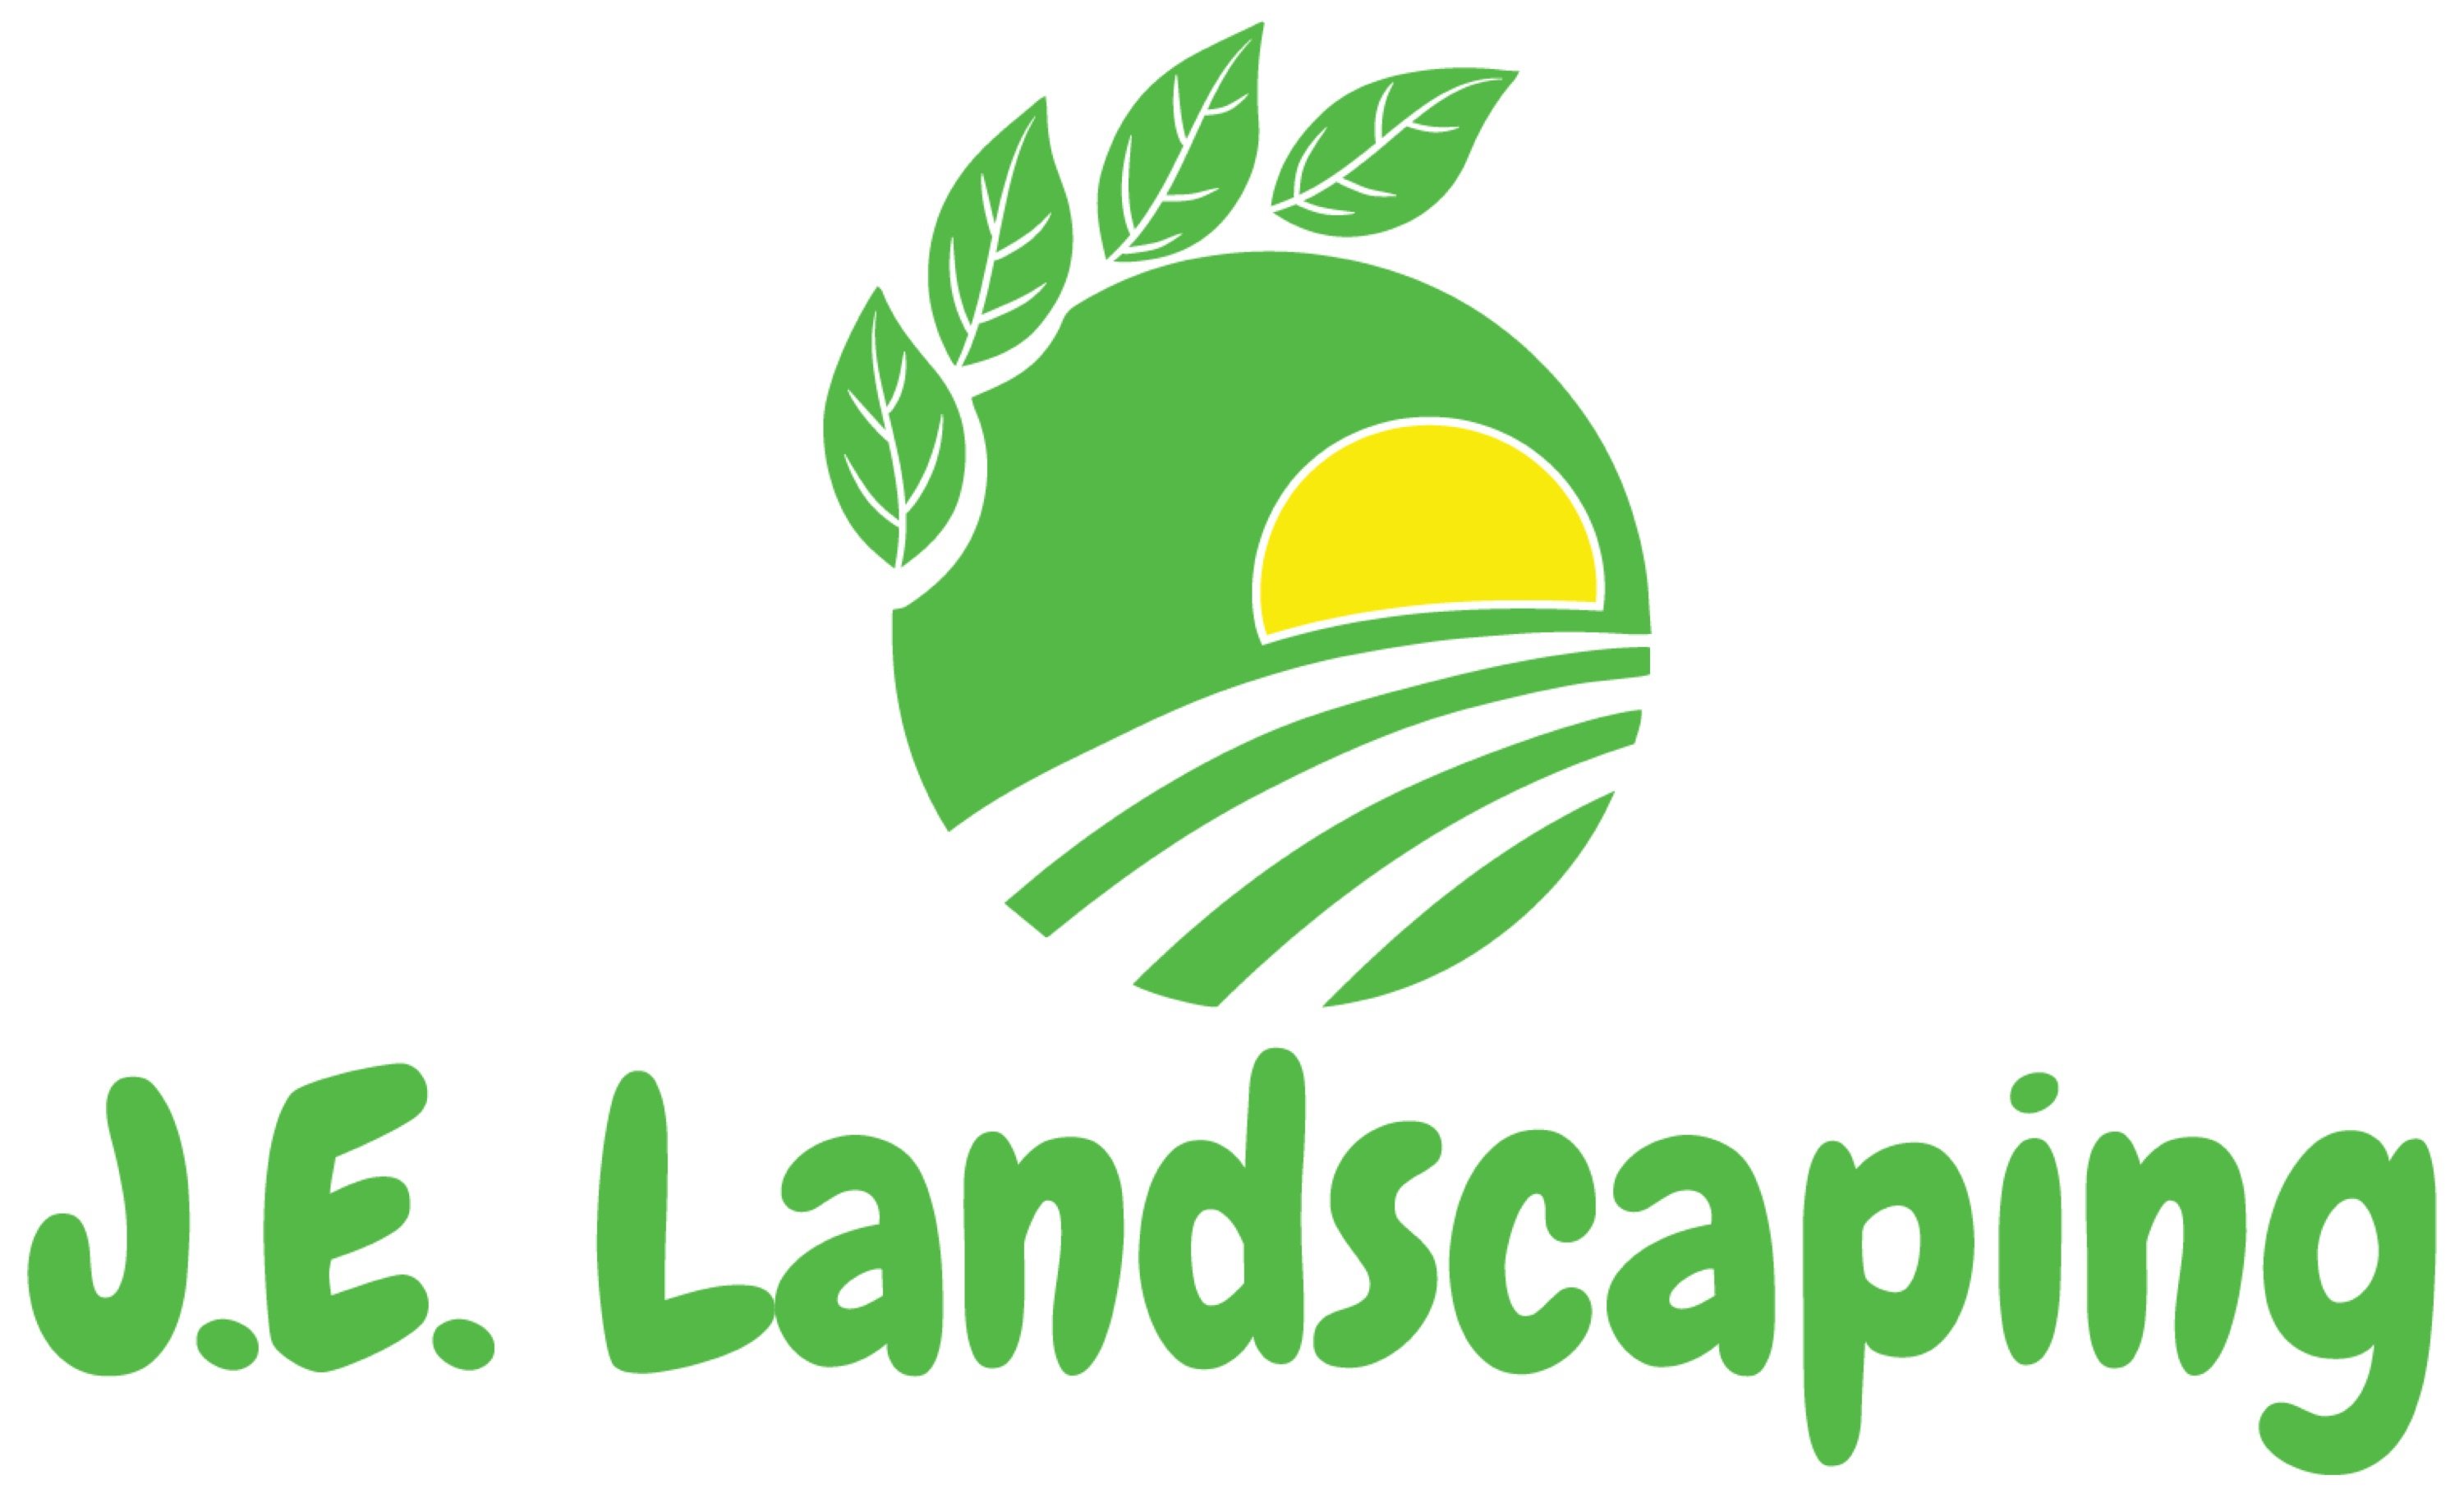 J.E. Landscaping Logo